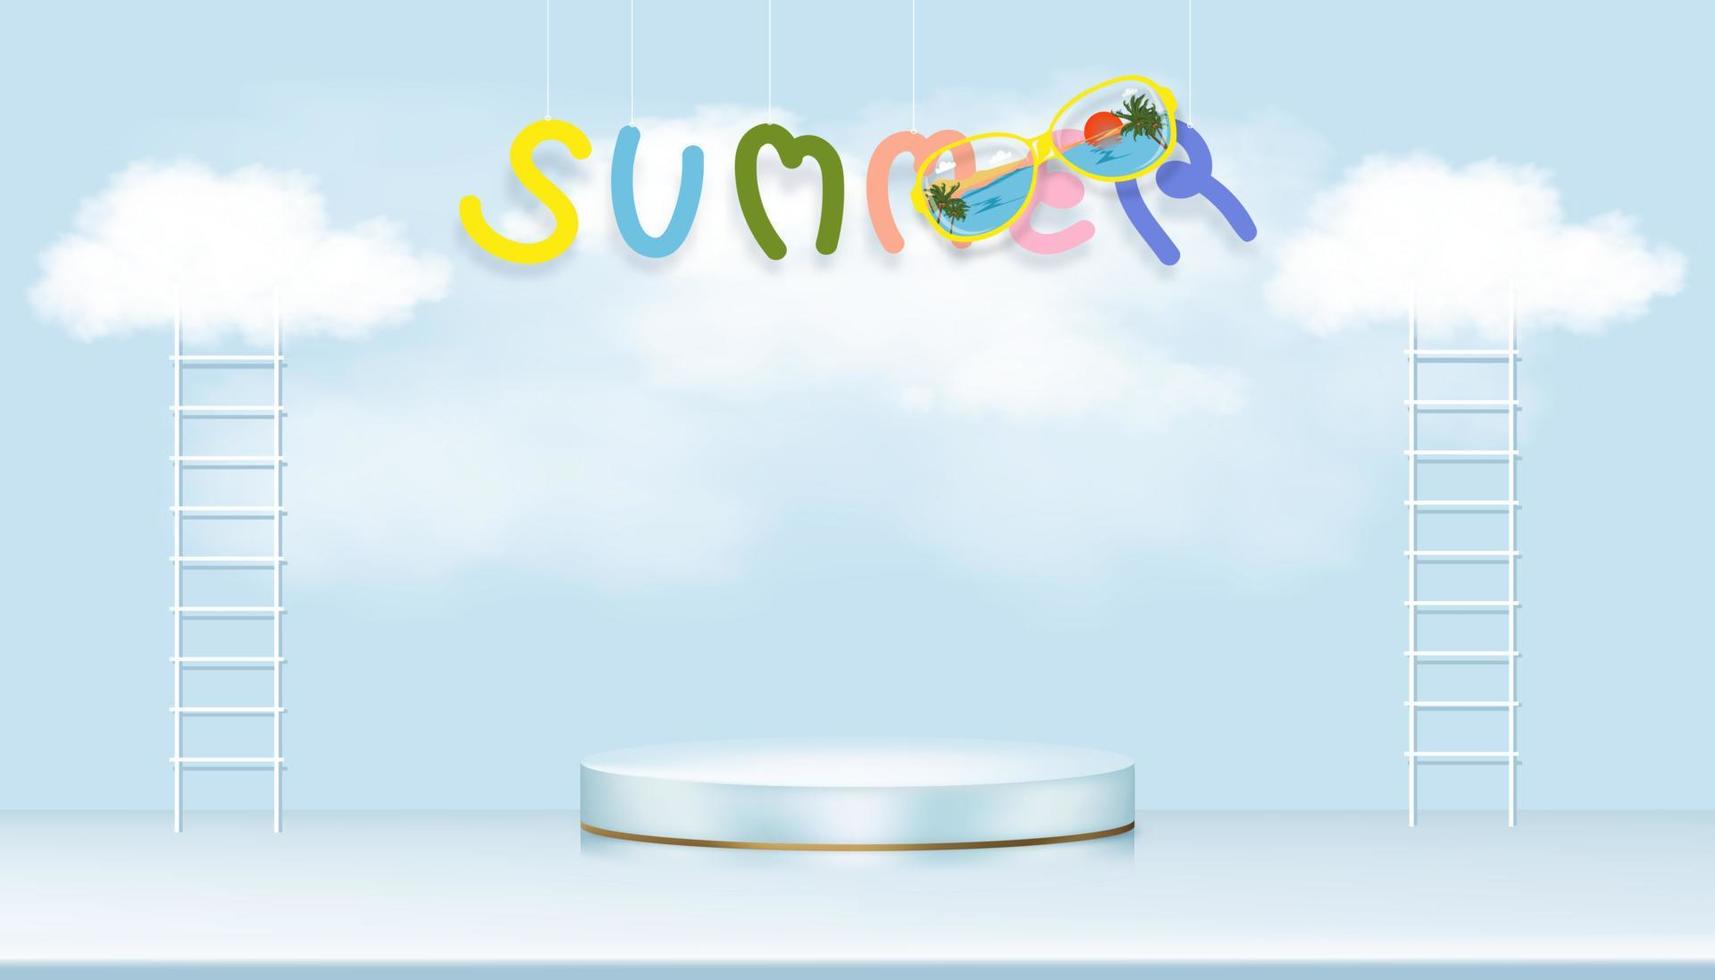 sala de estúdio com pódio e escada com nuvem fofa flutuando no fundo do céu azul, ilustração vetorial 3d pano de fundo design minimalista com vitrine simulada para apresentação de férias de verão vetor